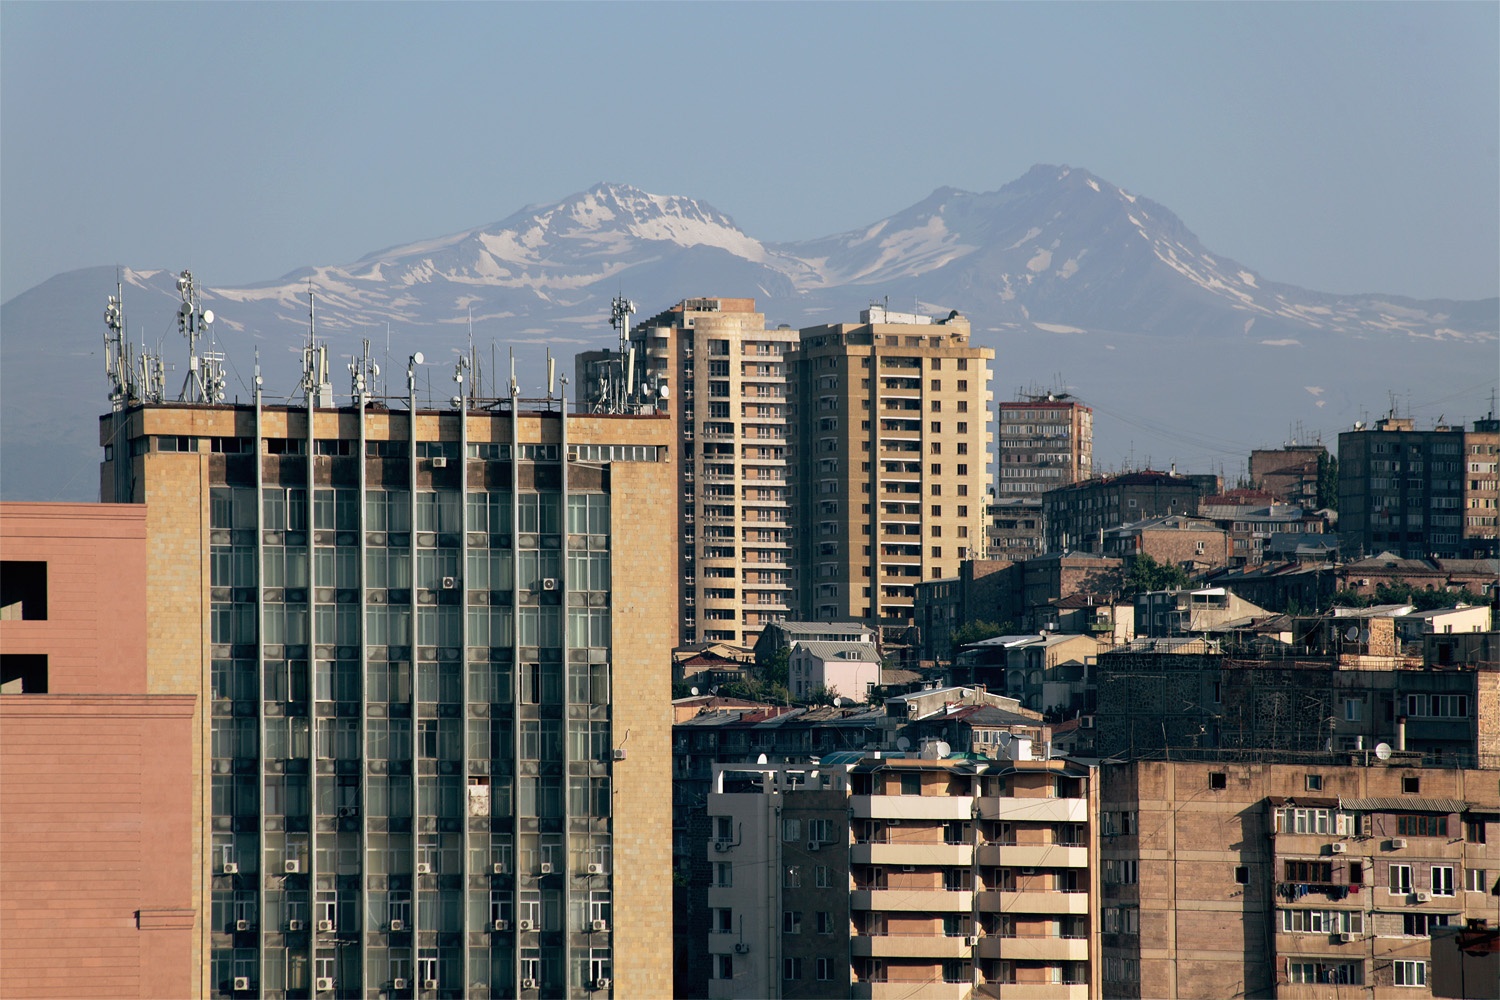 bill-hocker-mt-aragats-from-city-center-yerevan-armenia-2013